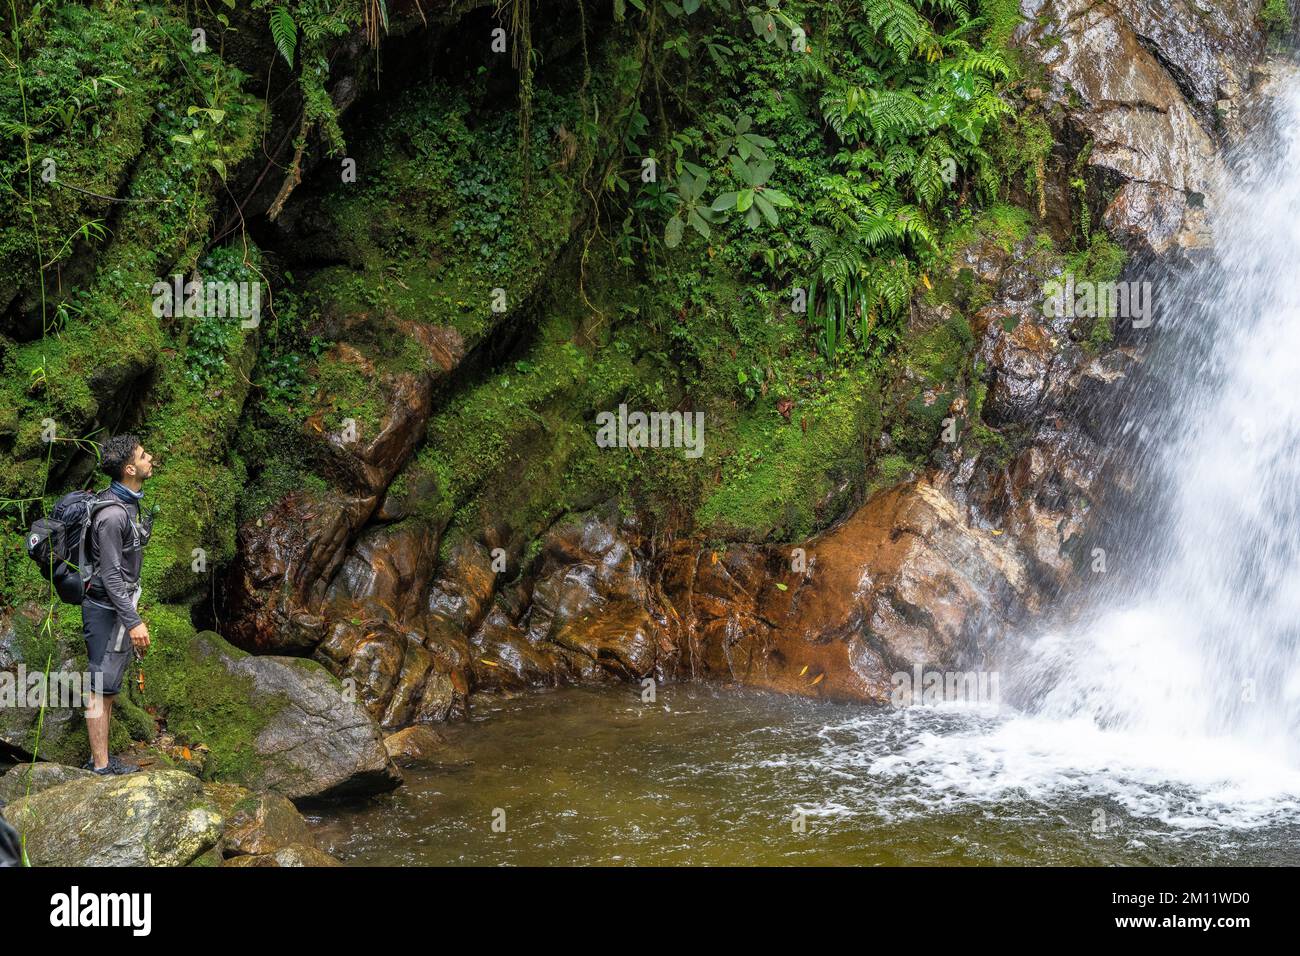 South America, Colombia, Departamento de Antioquia, Medellín, Envigado, Young man admires the waterfall Chorro de las Campanas in Quebrada la Miel Stock Photo